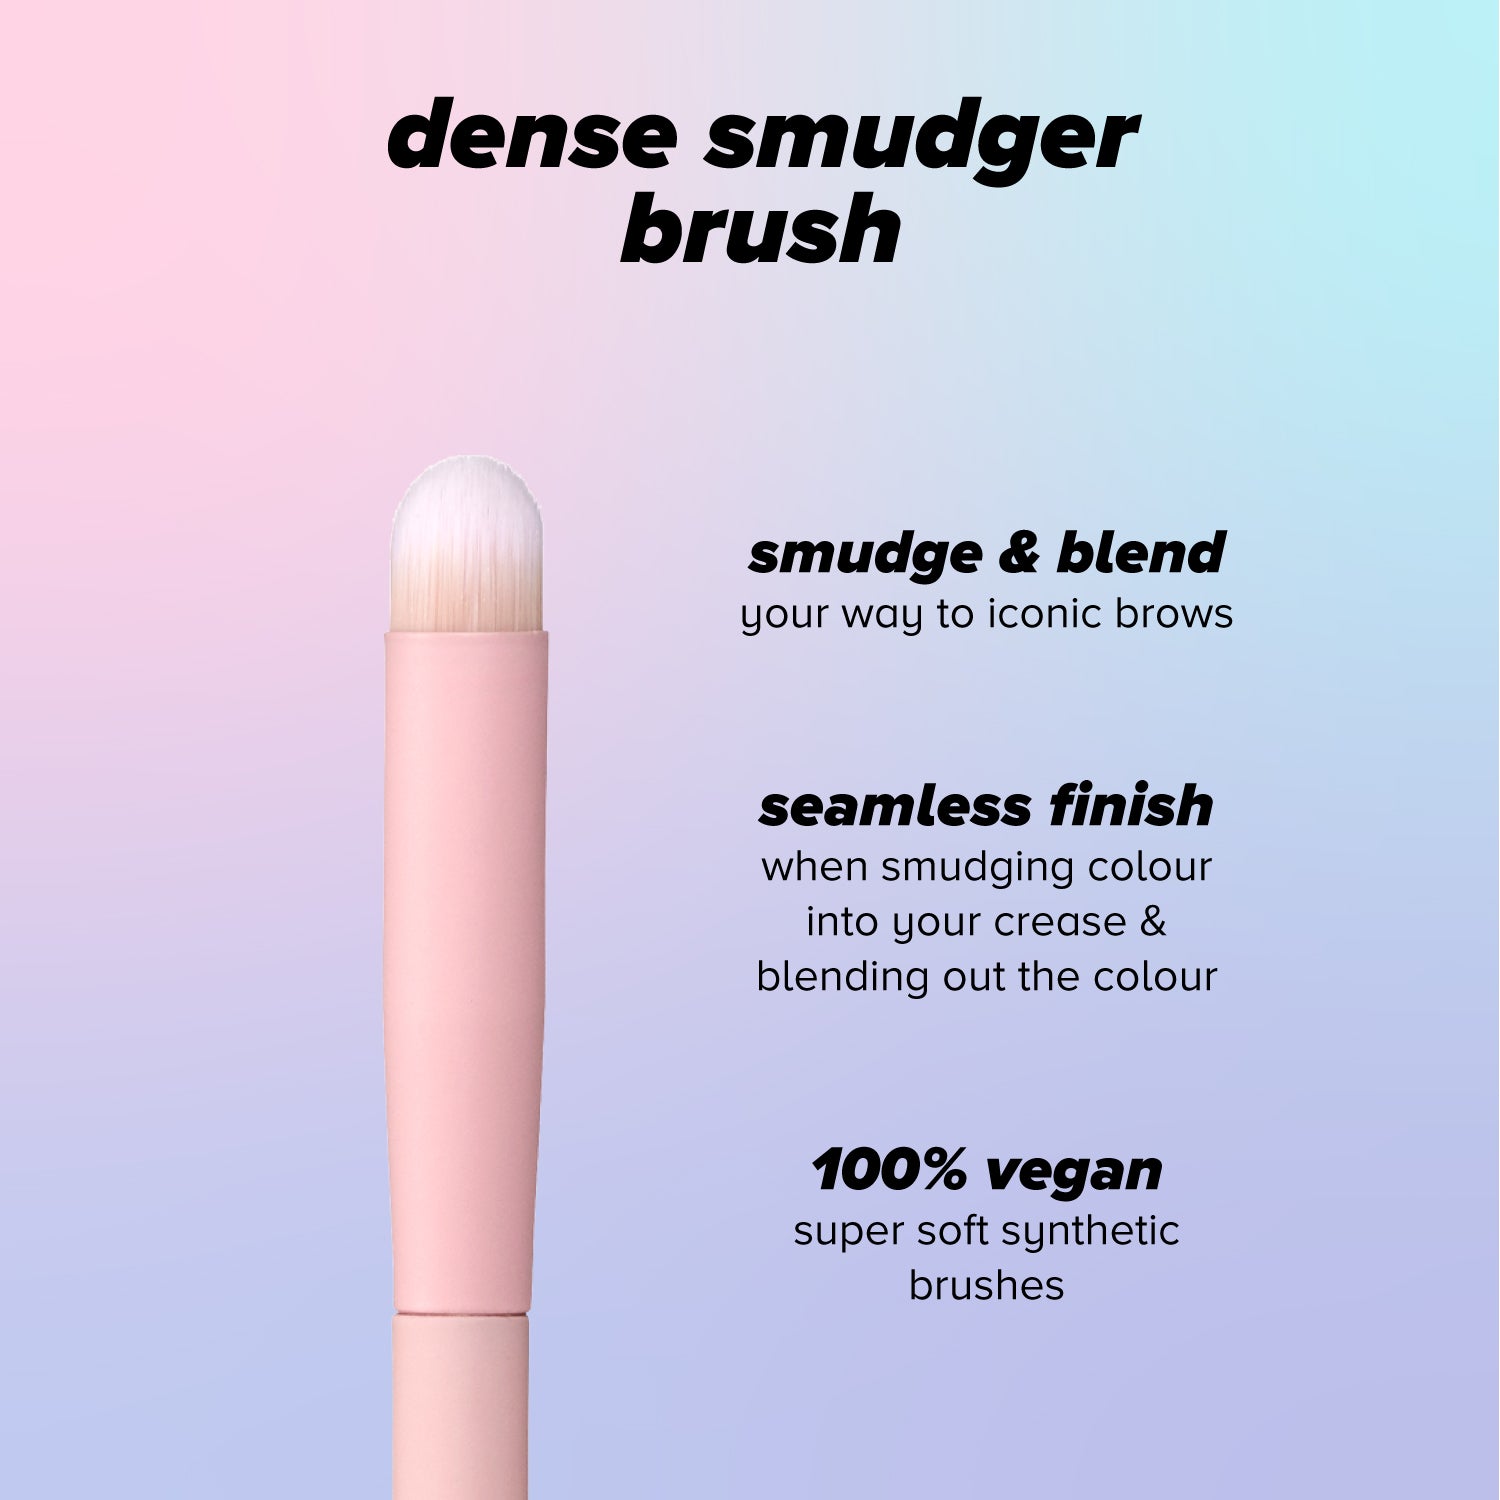 dense smudger brush